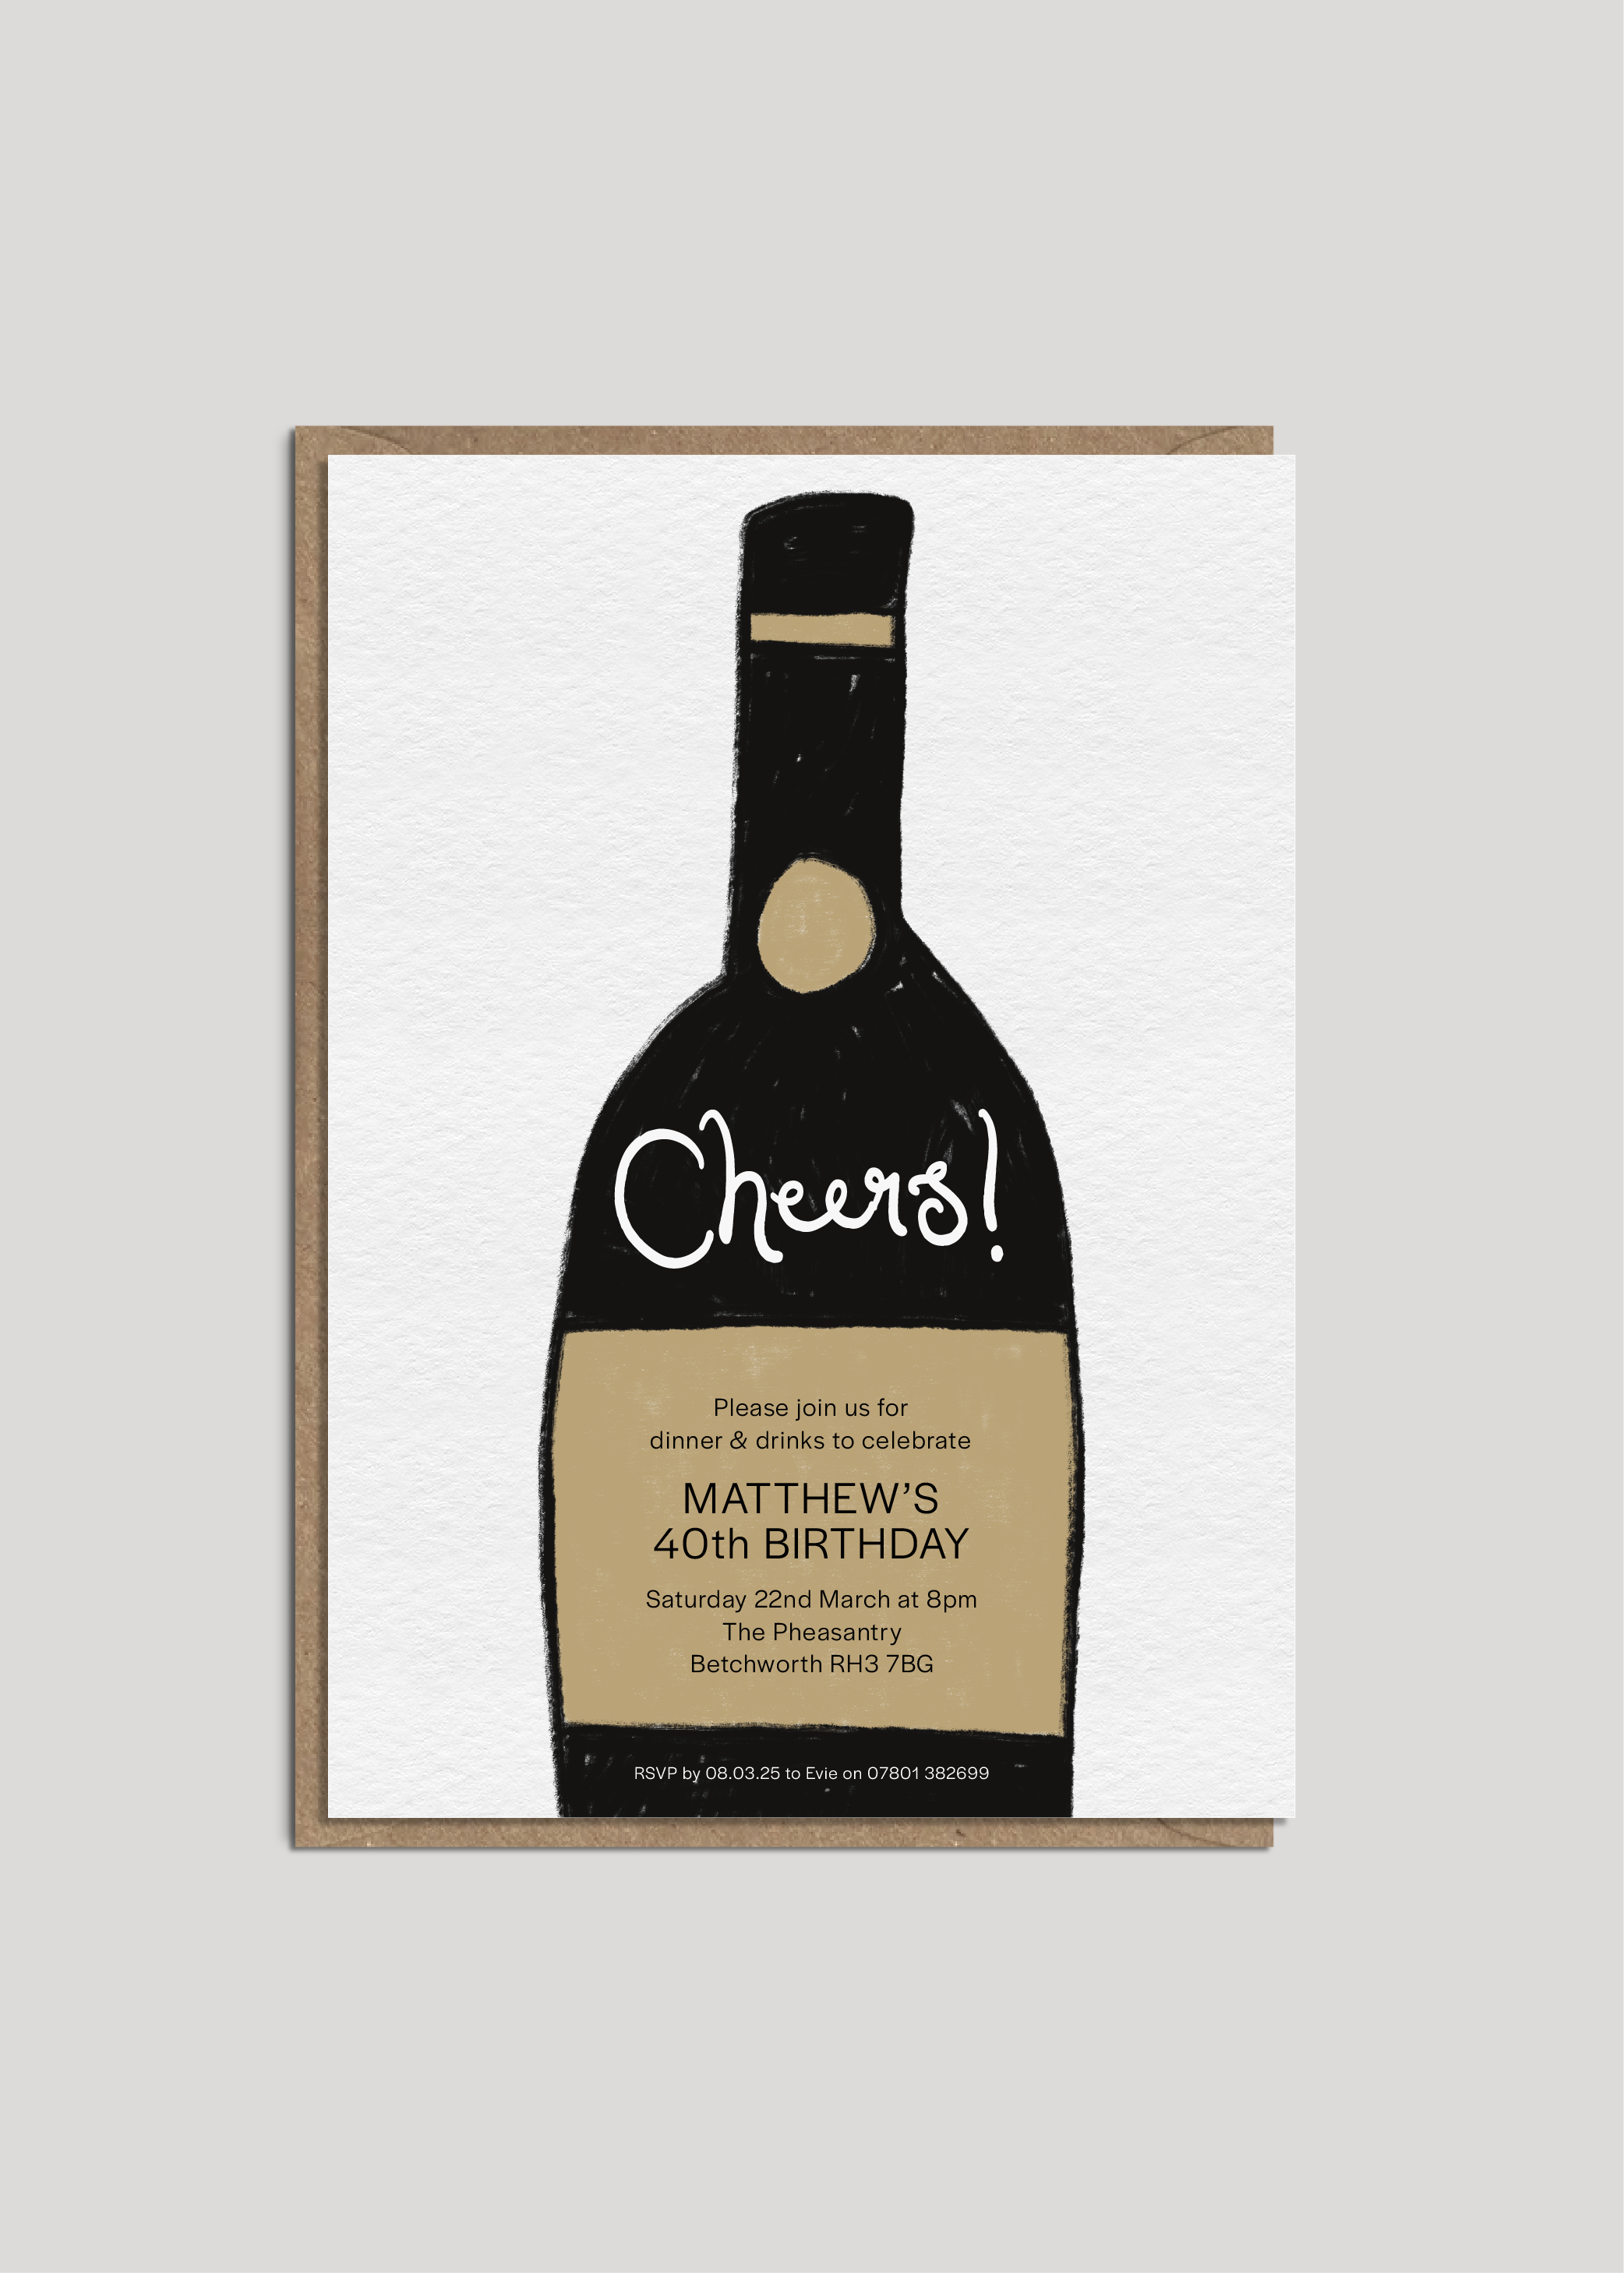 Matthew's Cheers Invite — Printed